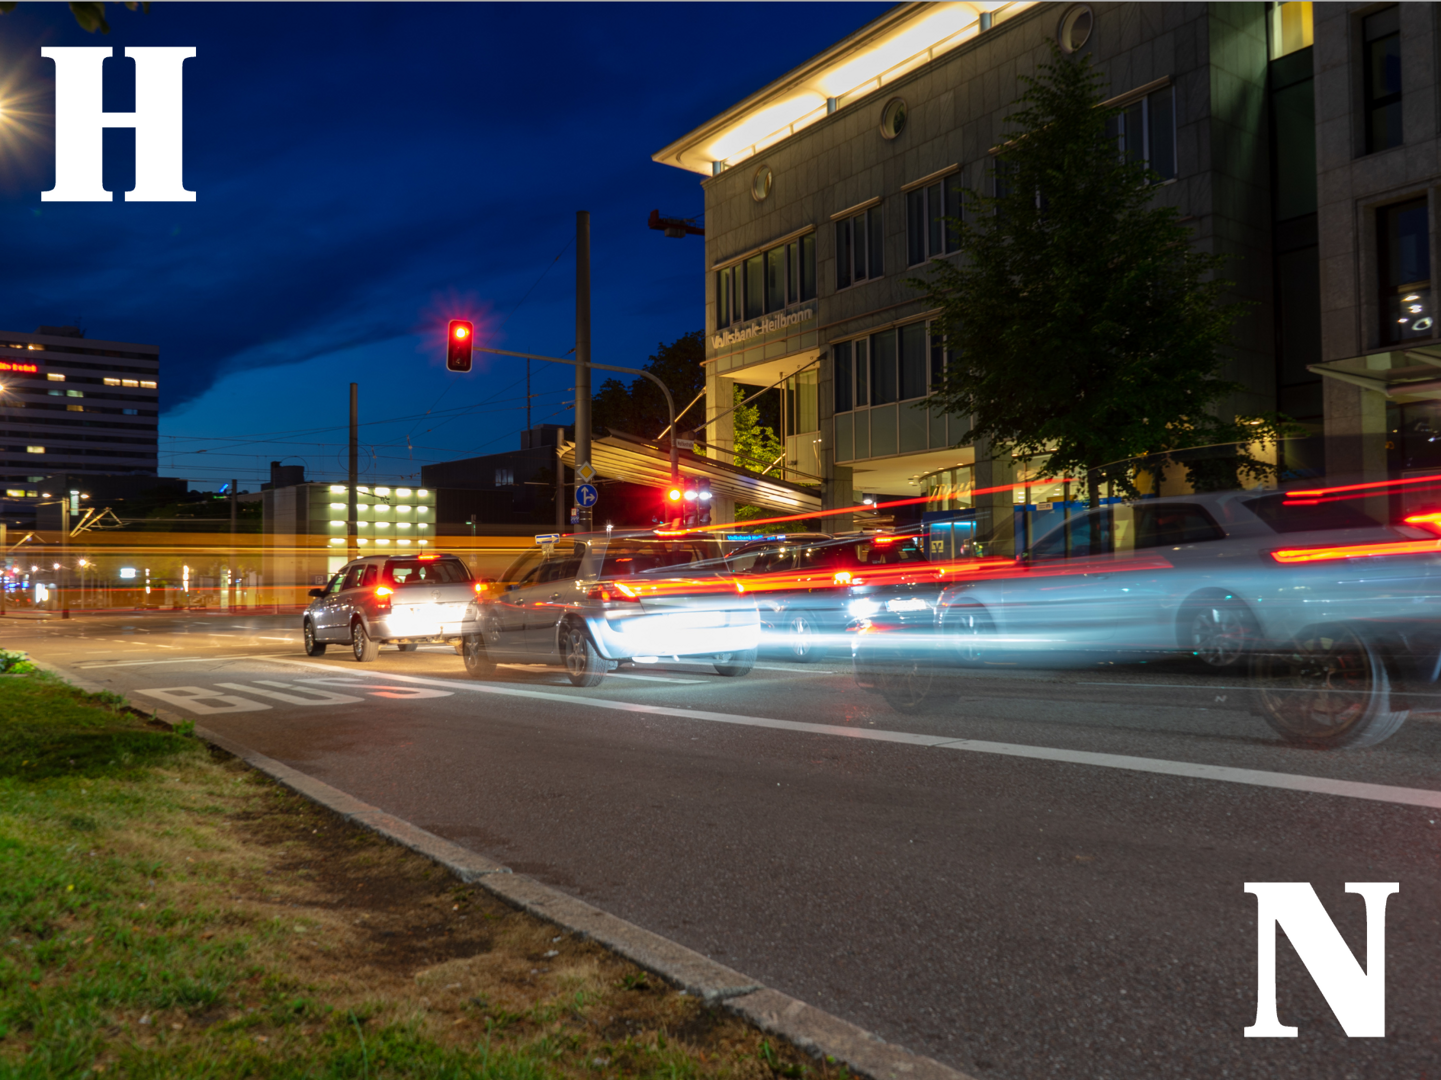 Auf dem Foto ist die Heilbronner Allee bei Nacht zu sehen. Verschwommene Autos stehen an einer Ampel vor einem Gebäude. Im Hintergrund ist verschowmmen eine vorbeifahrende Stadtbahn zu sehen.